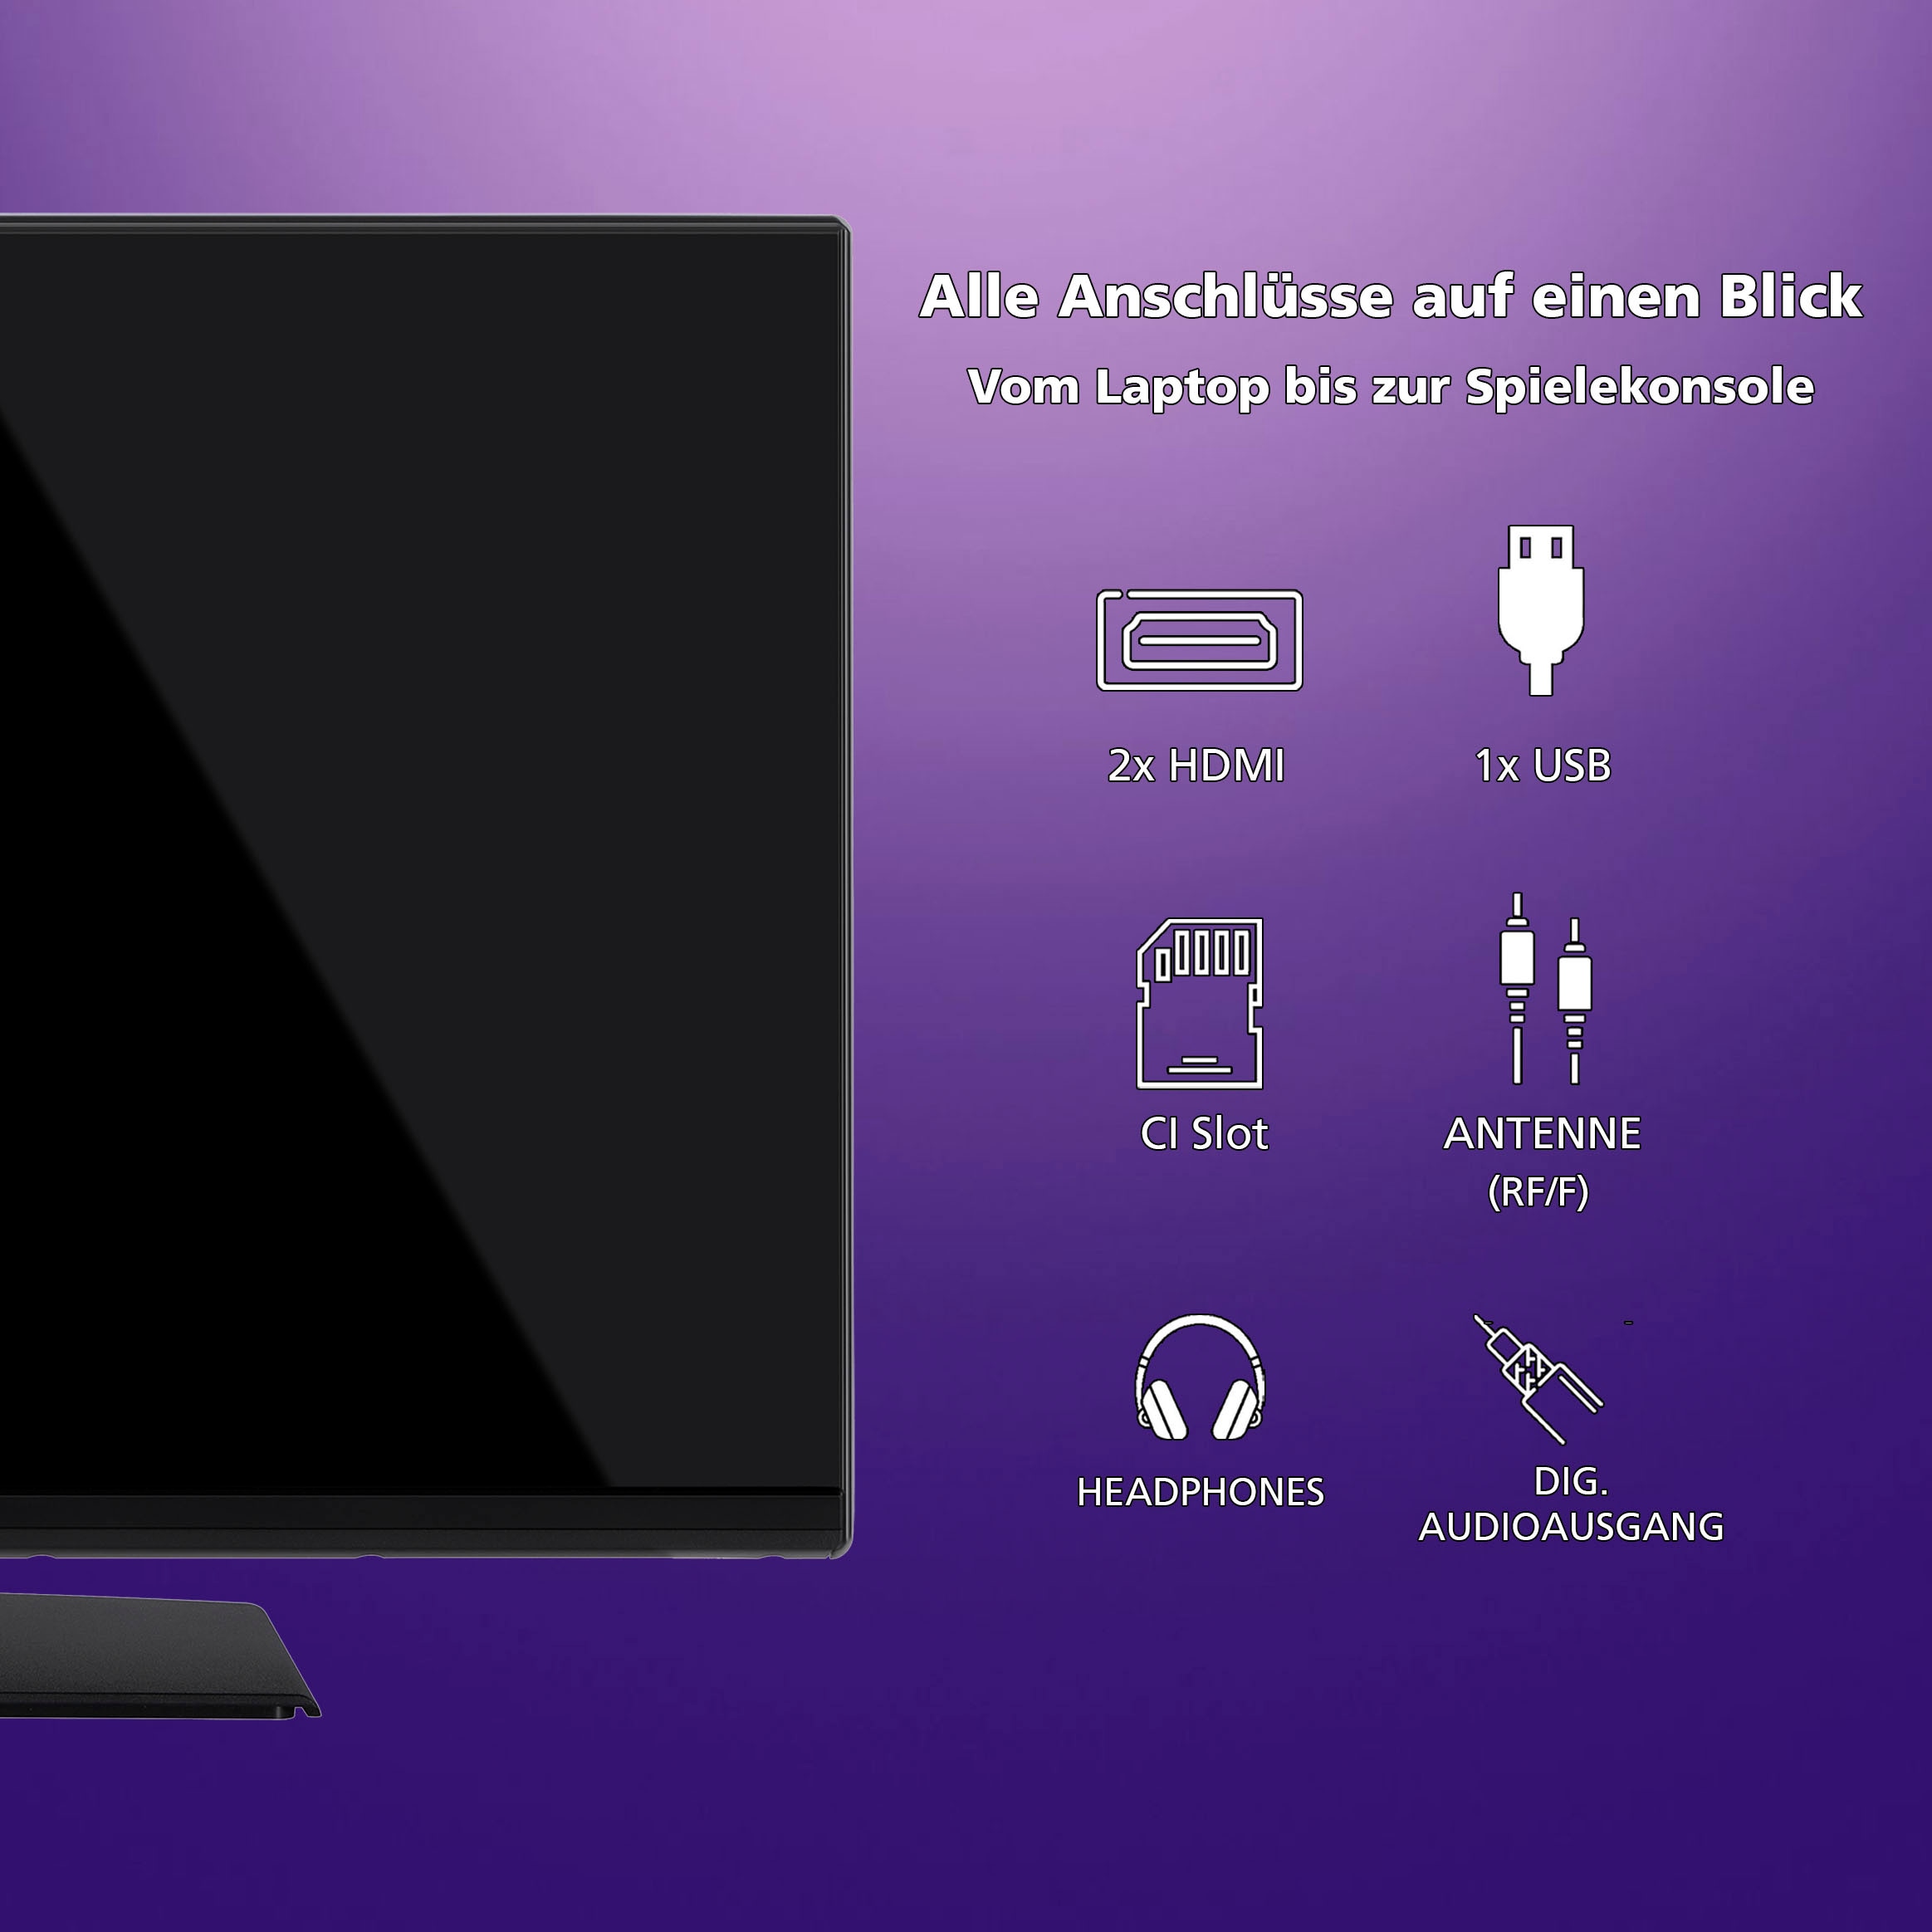 JVC LED-Fernseher, 80 cm/32 Zoll, HD-ready